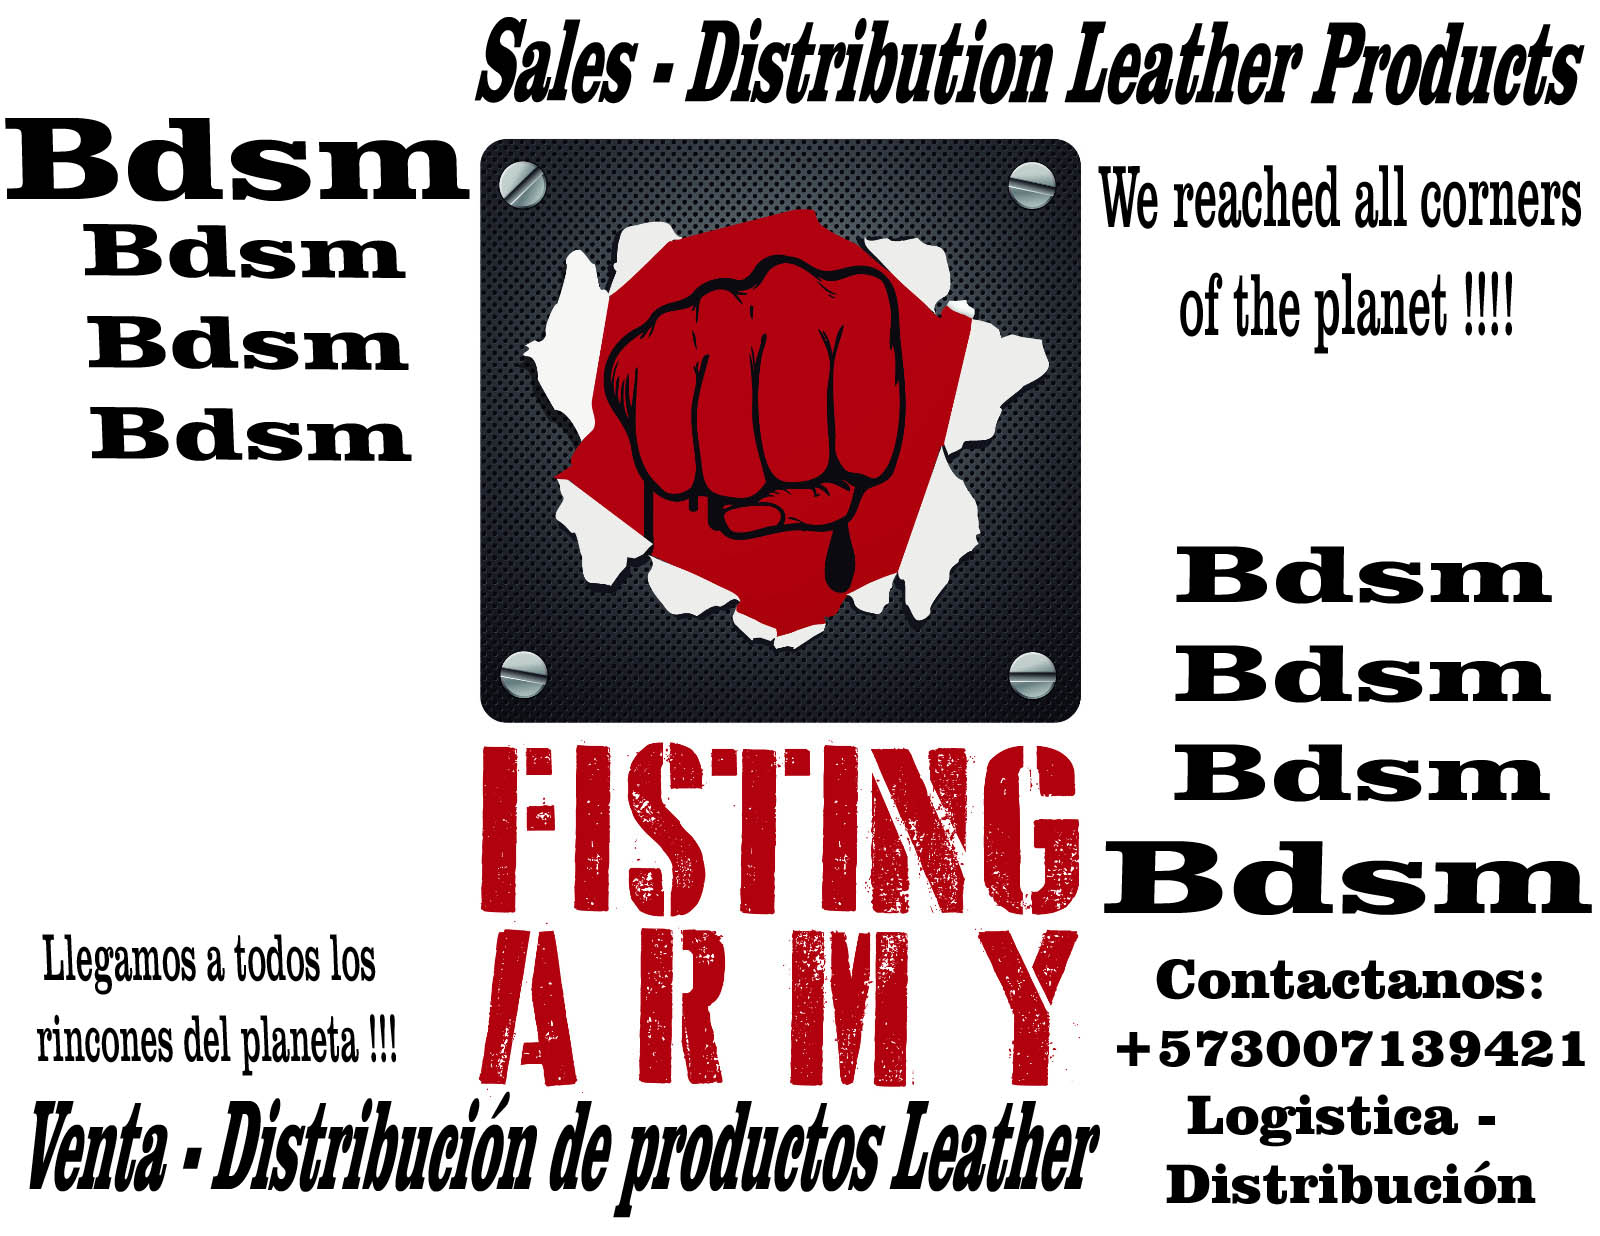 Venta - Comercialización de productos Leather